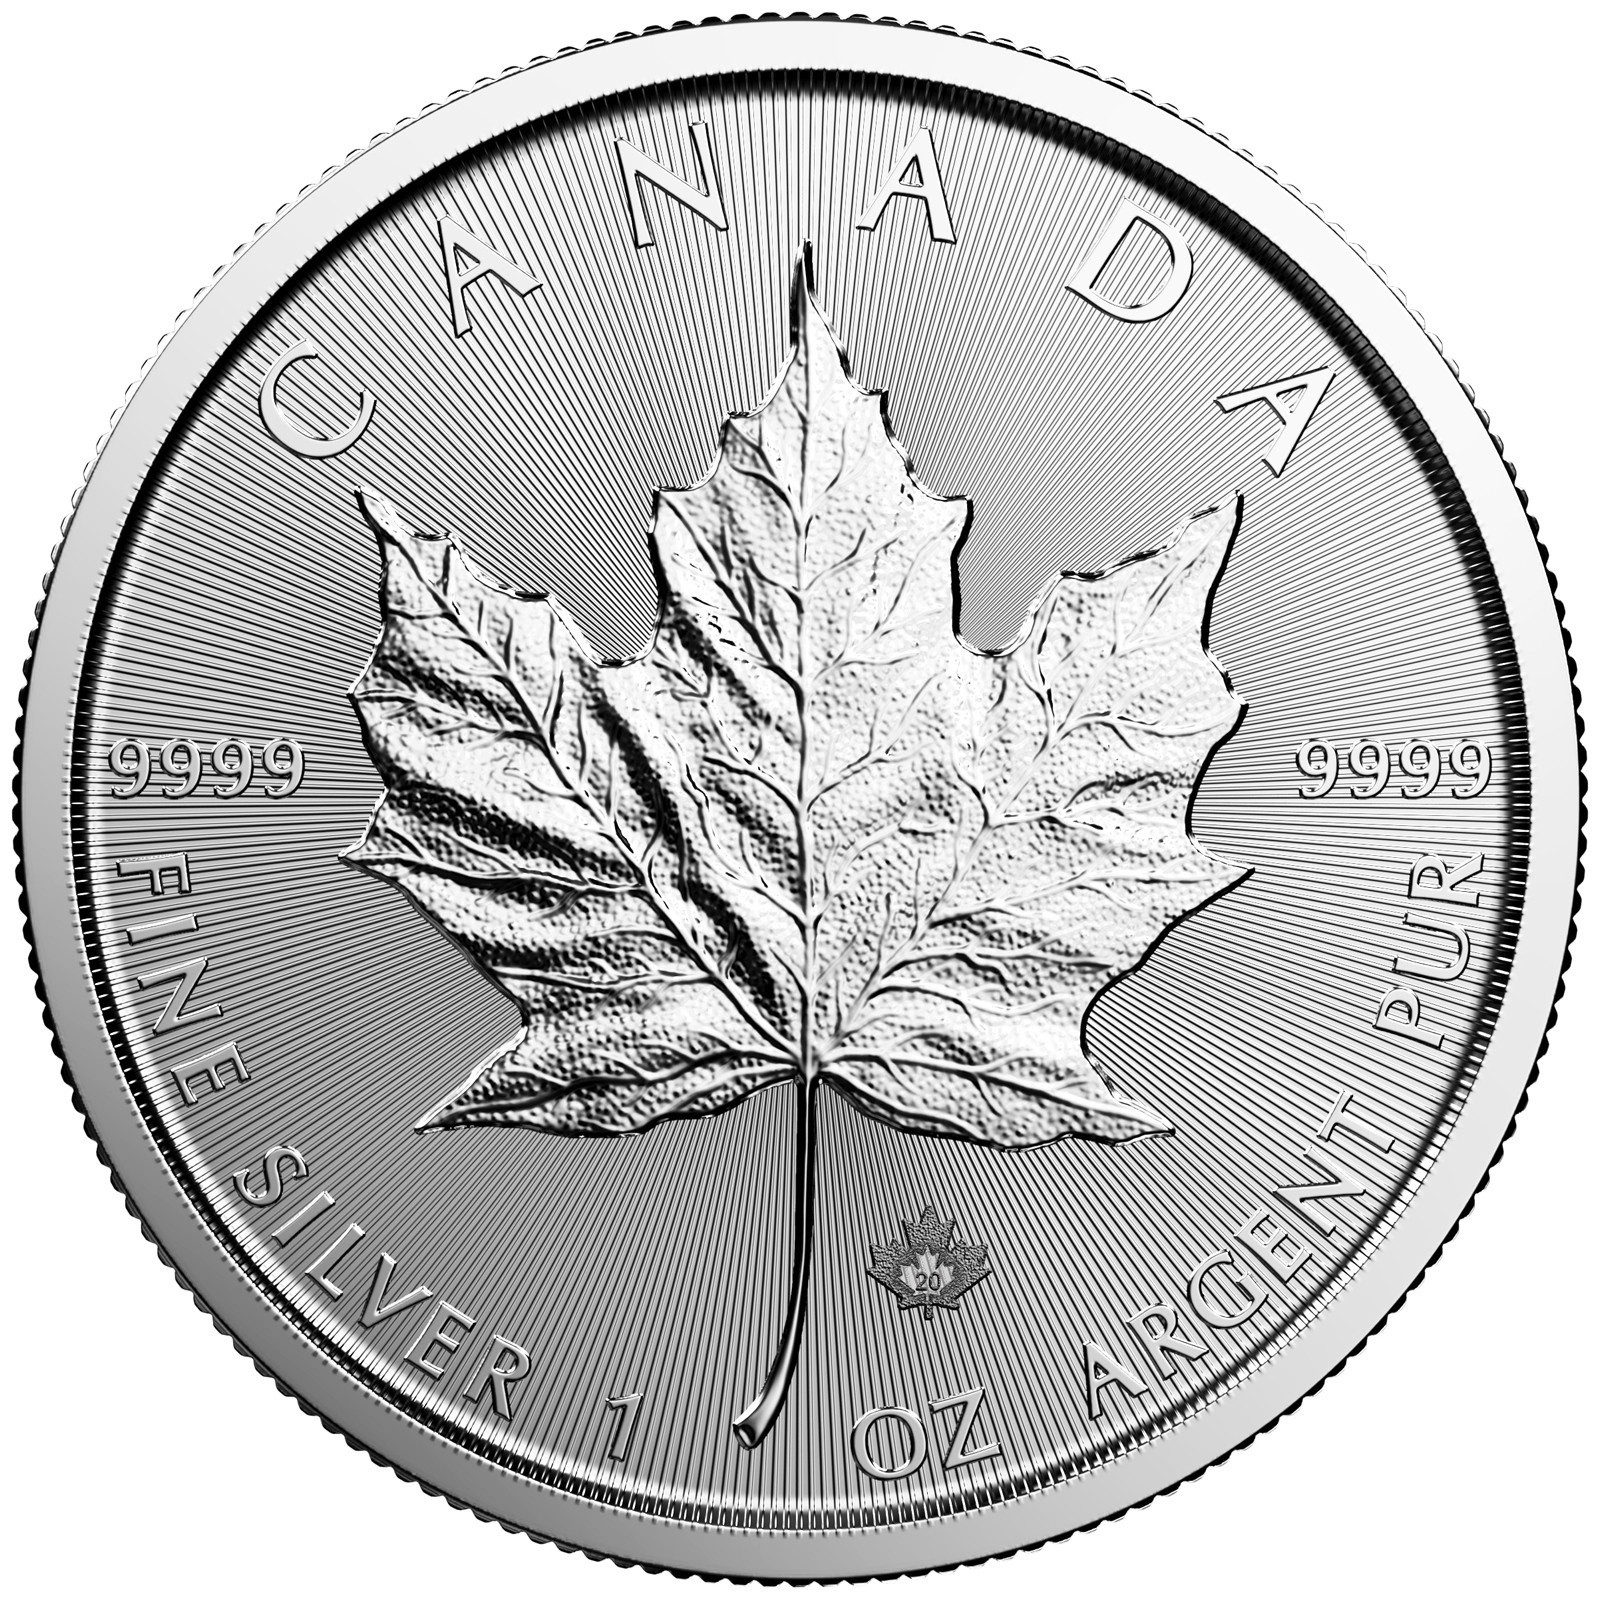 2020 silver maple leaf